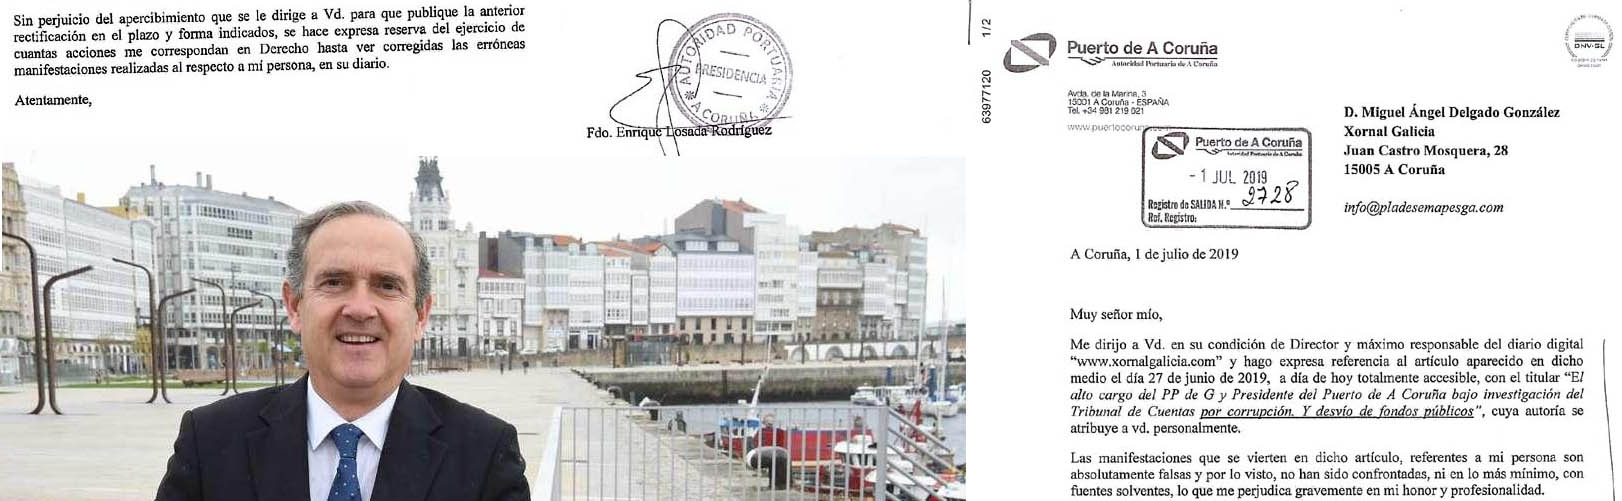 Sr Presidente del Puerto de A Coruña ¡ es Usted un cobarde ! nos amenaza  con acciones legales sumándose al acoso de Mar Sánchez Sierra y depués  recula en sus amenazas. -